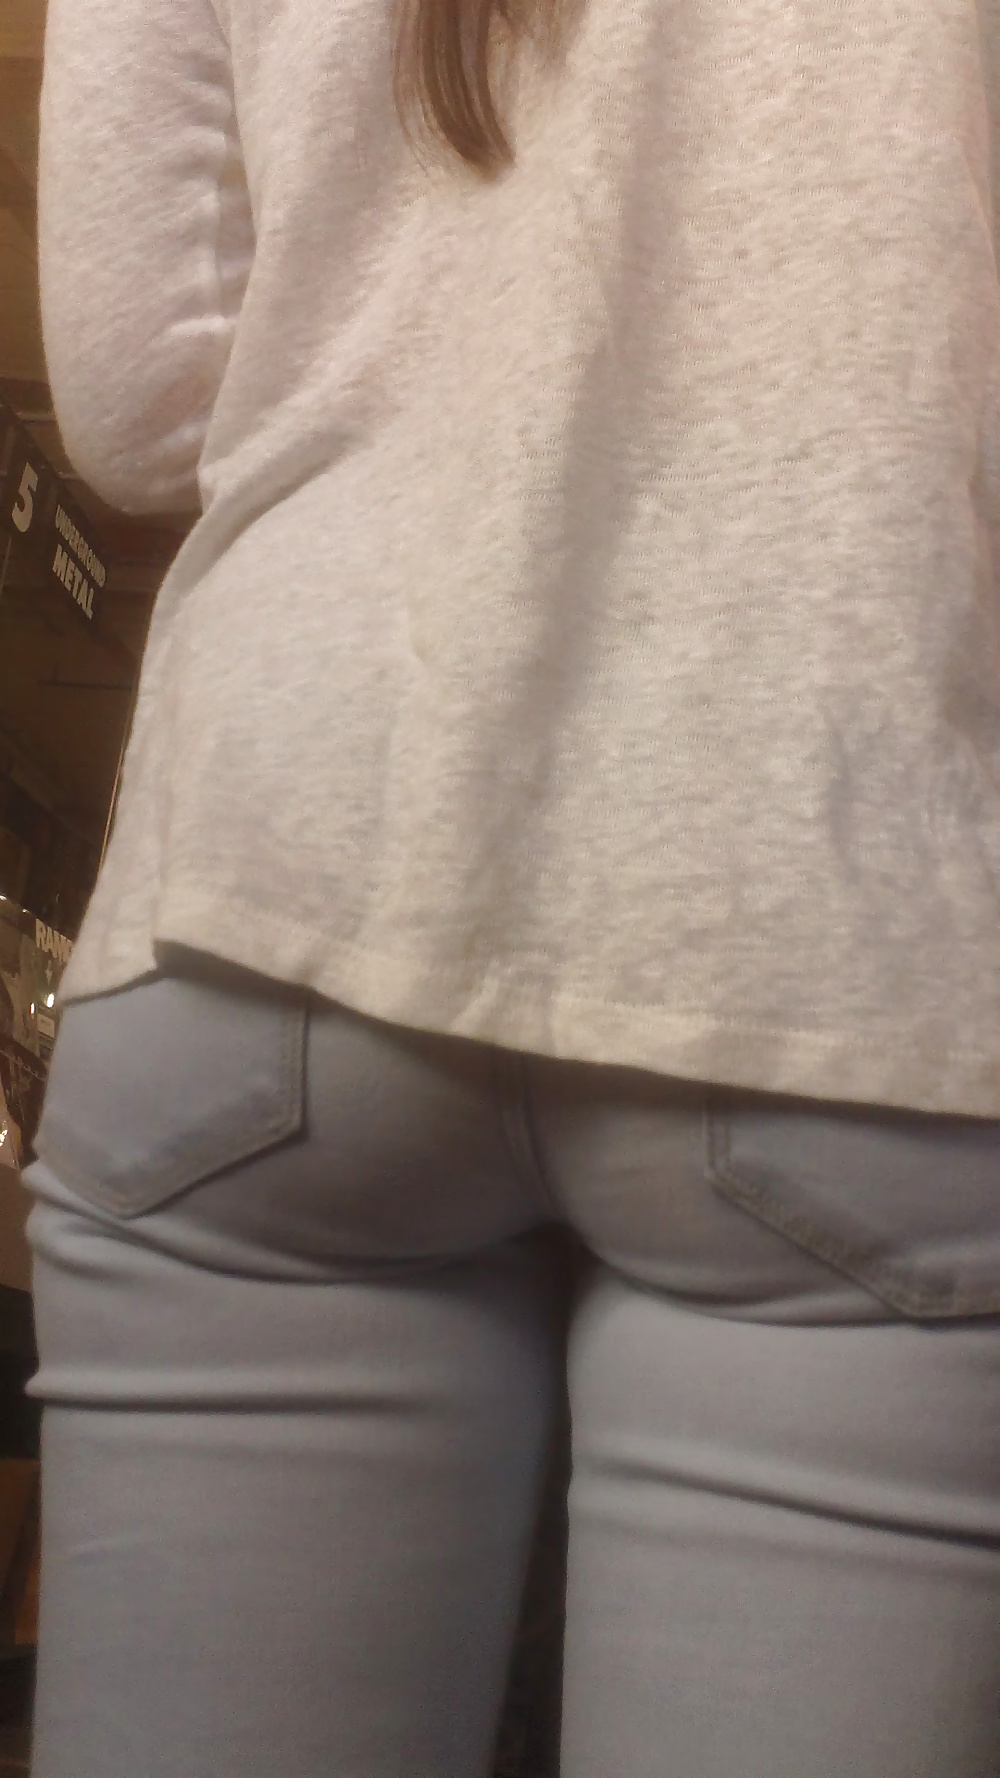 Popular teen girls ass & butt in jeans Part 7 #39948696